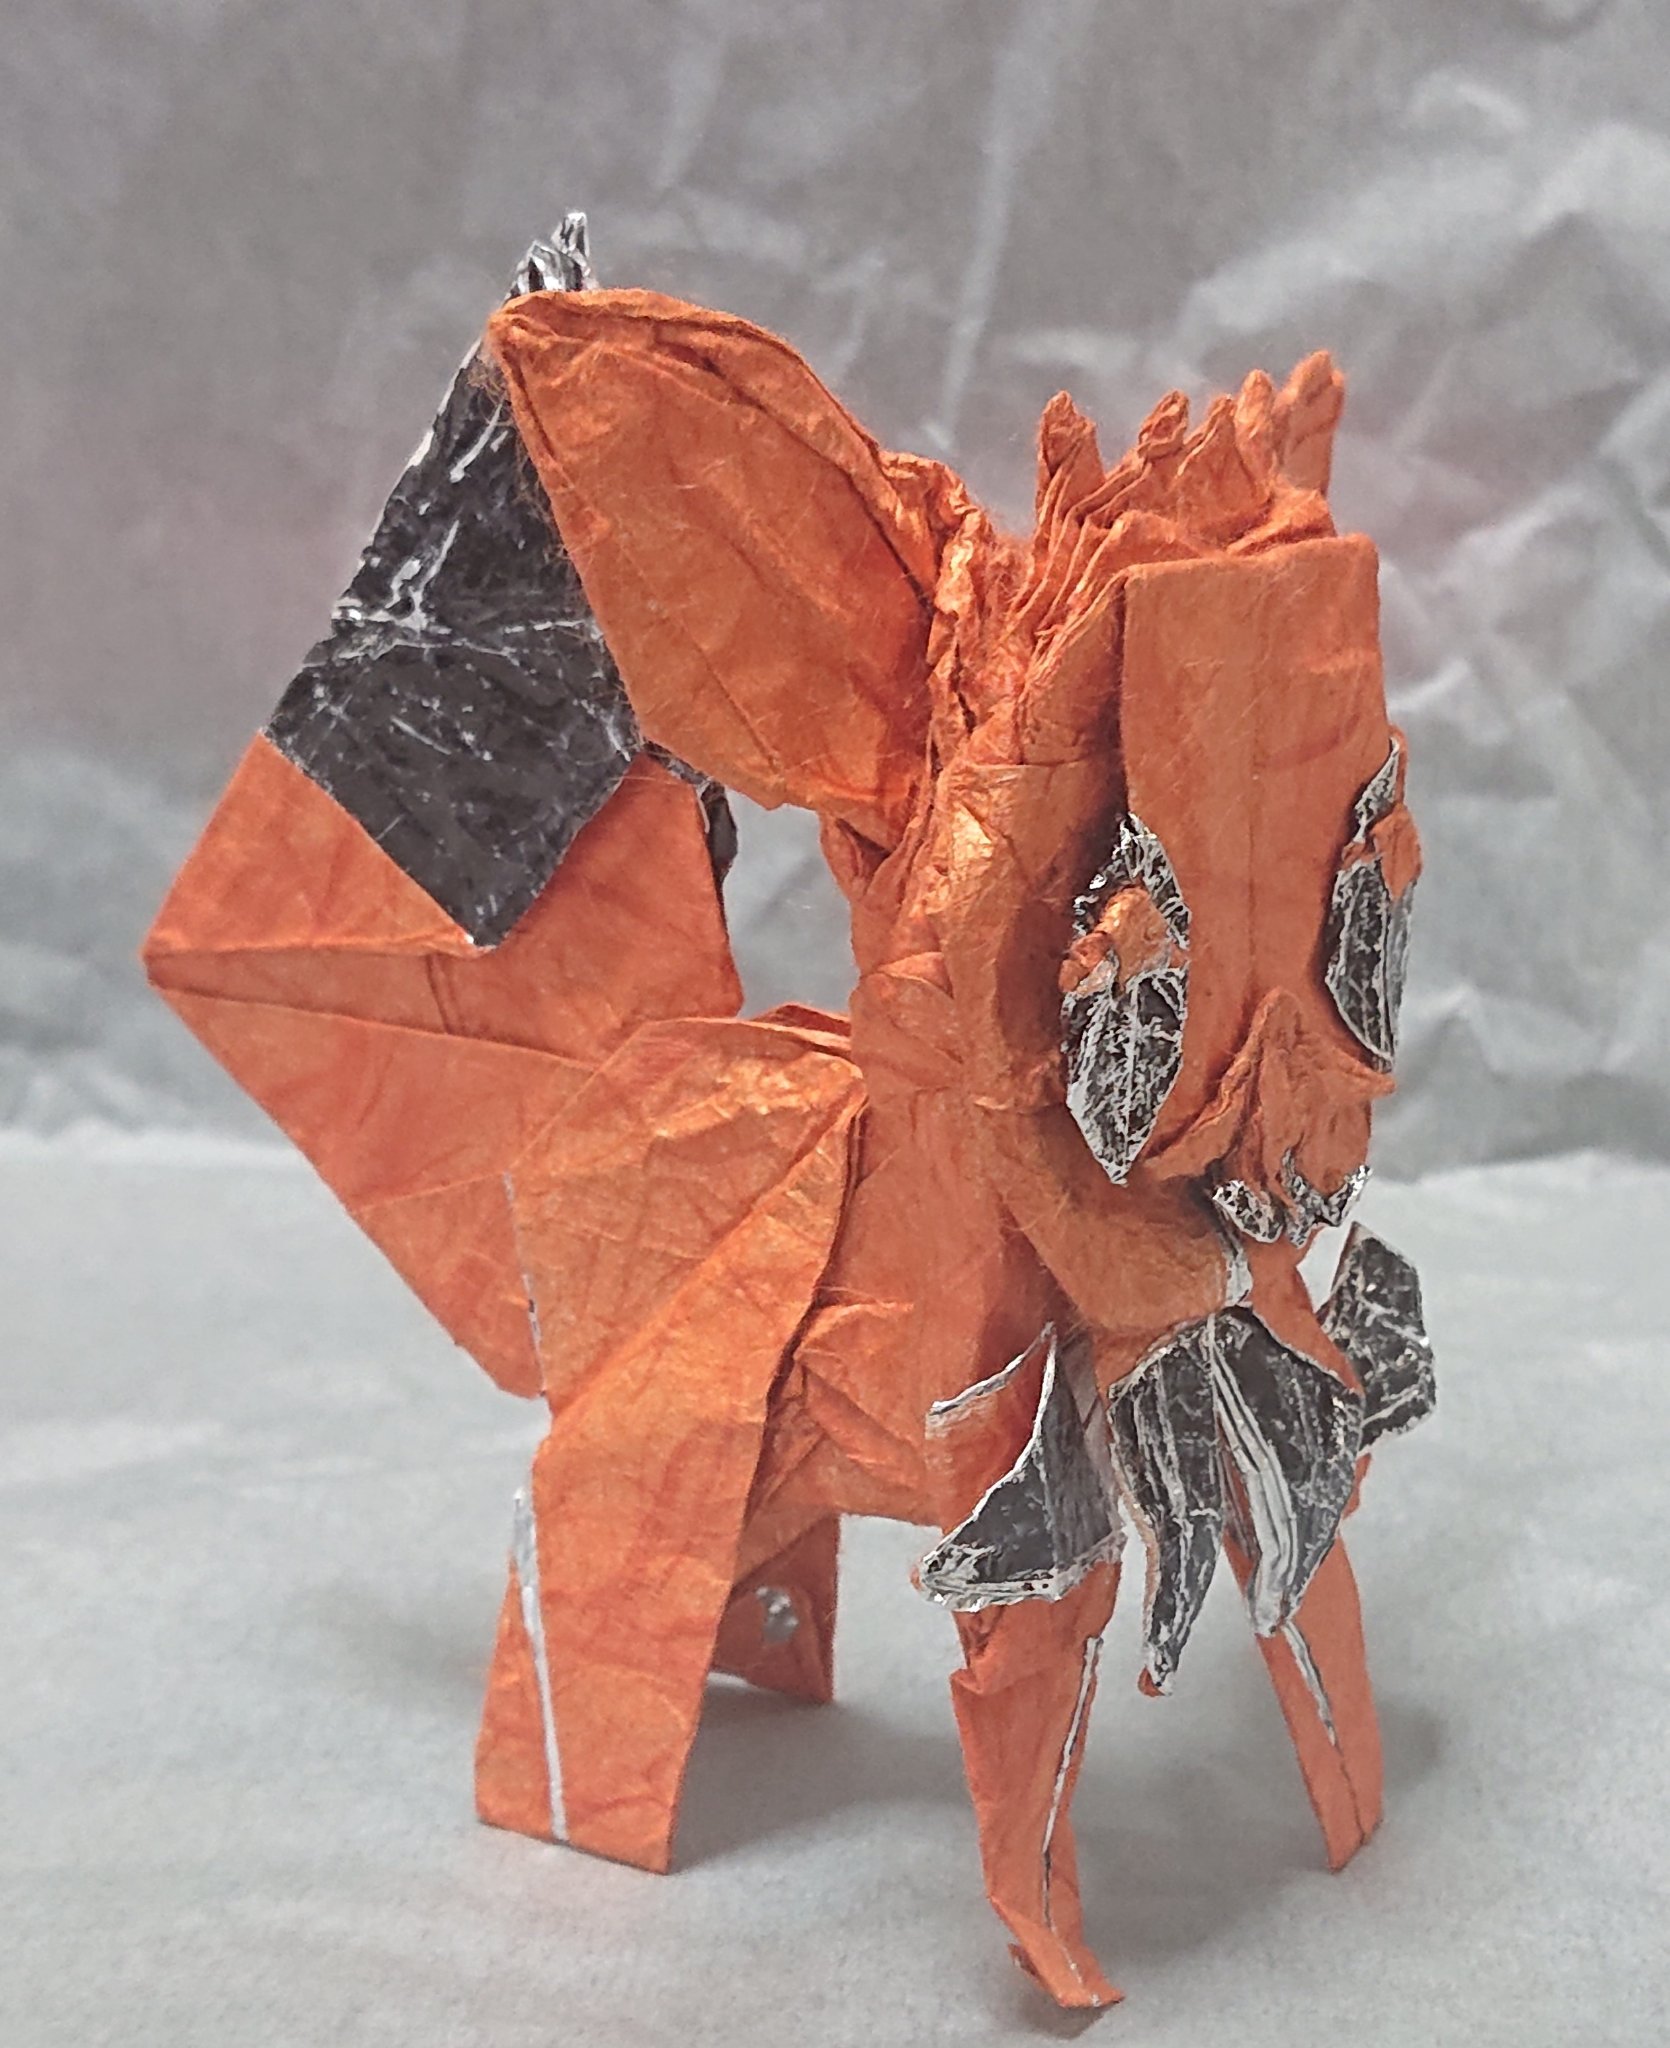 Maritaka Origami 折り紙でポケモンのイーブイを折りました 1枚の紙でハサミ非使用 裏目を少し黒で塗っていますが裏面が黒い紙で折ってもと同じ仕上がりになります ナインエボルブーストがない剣盾のイーブイは運用はきつそうです 折り紙作品